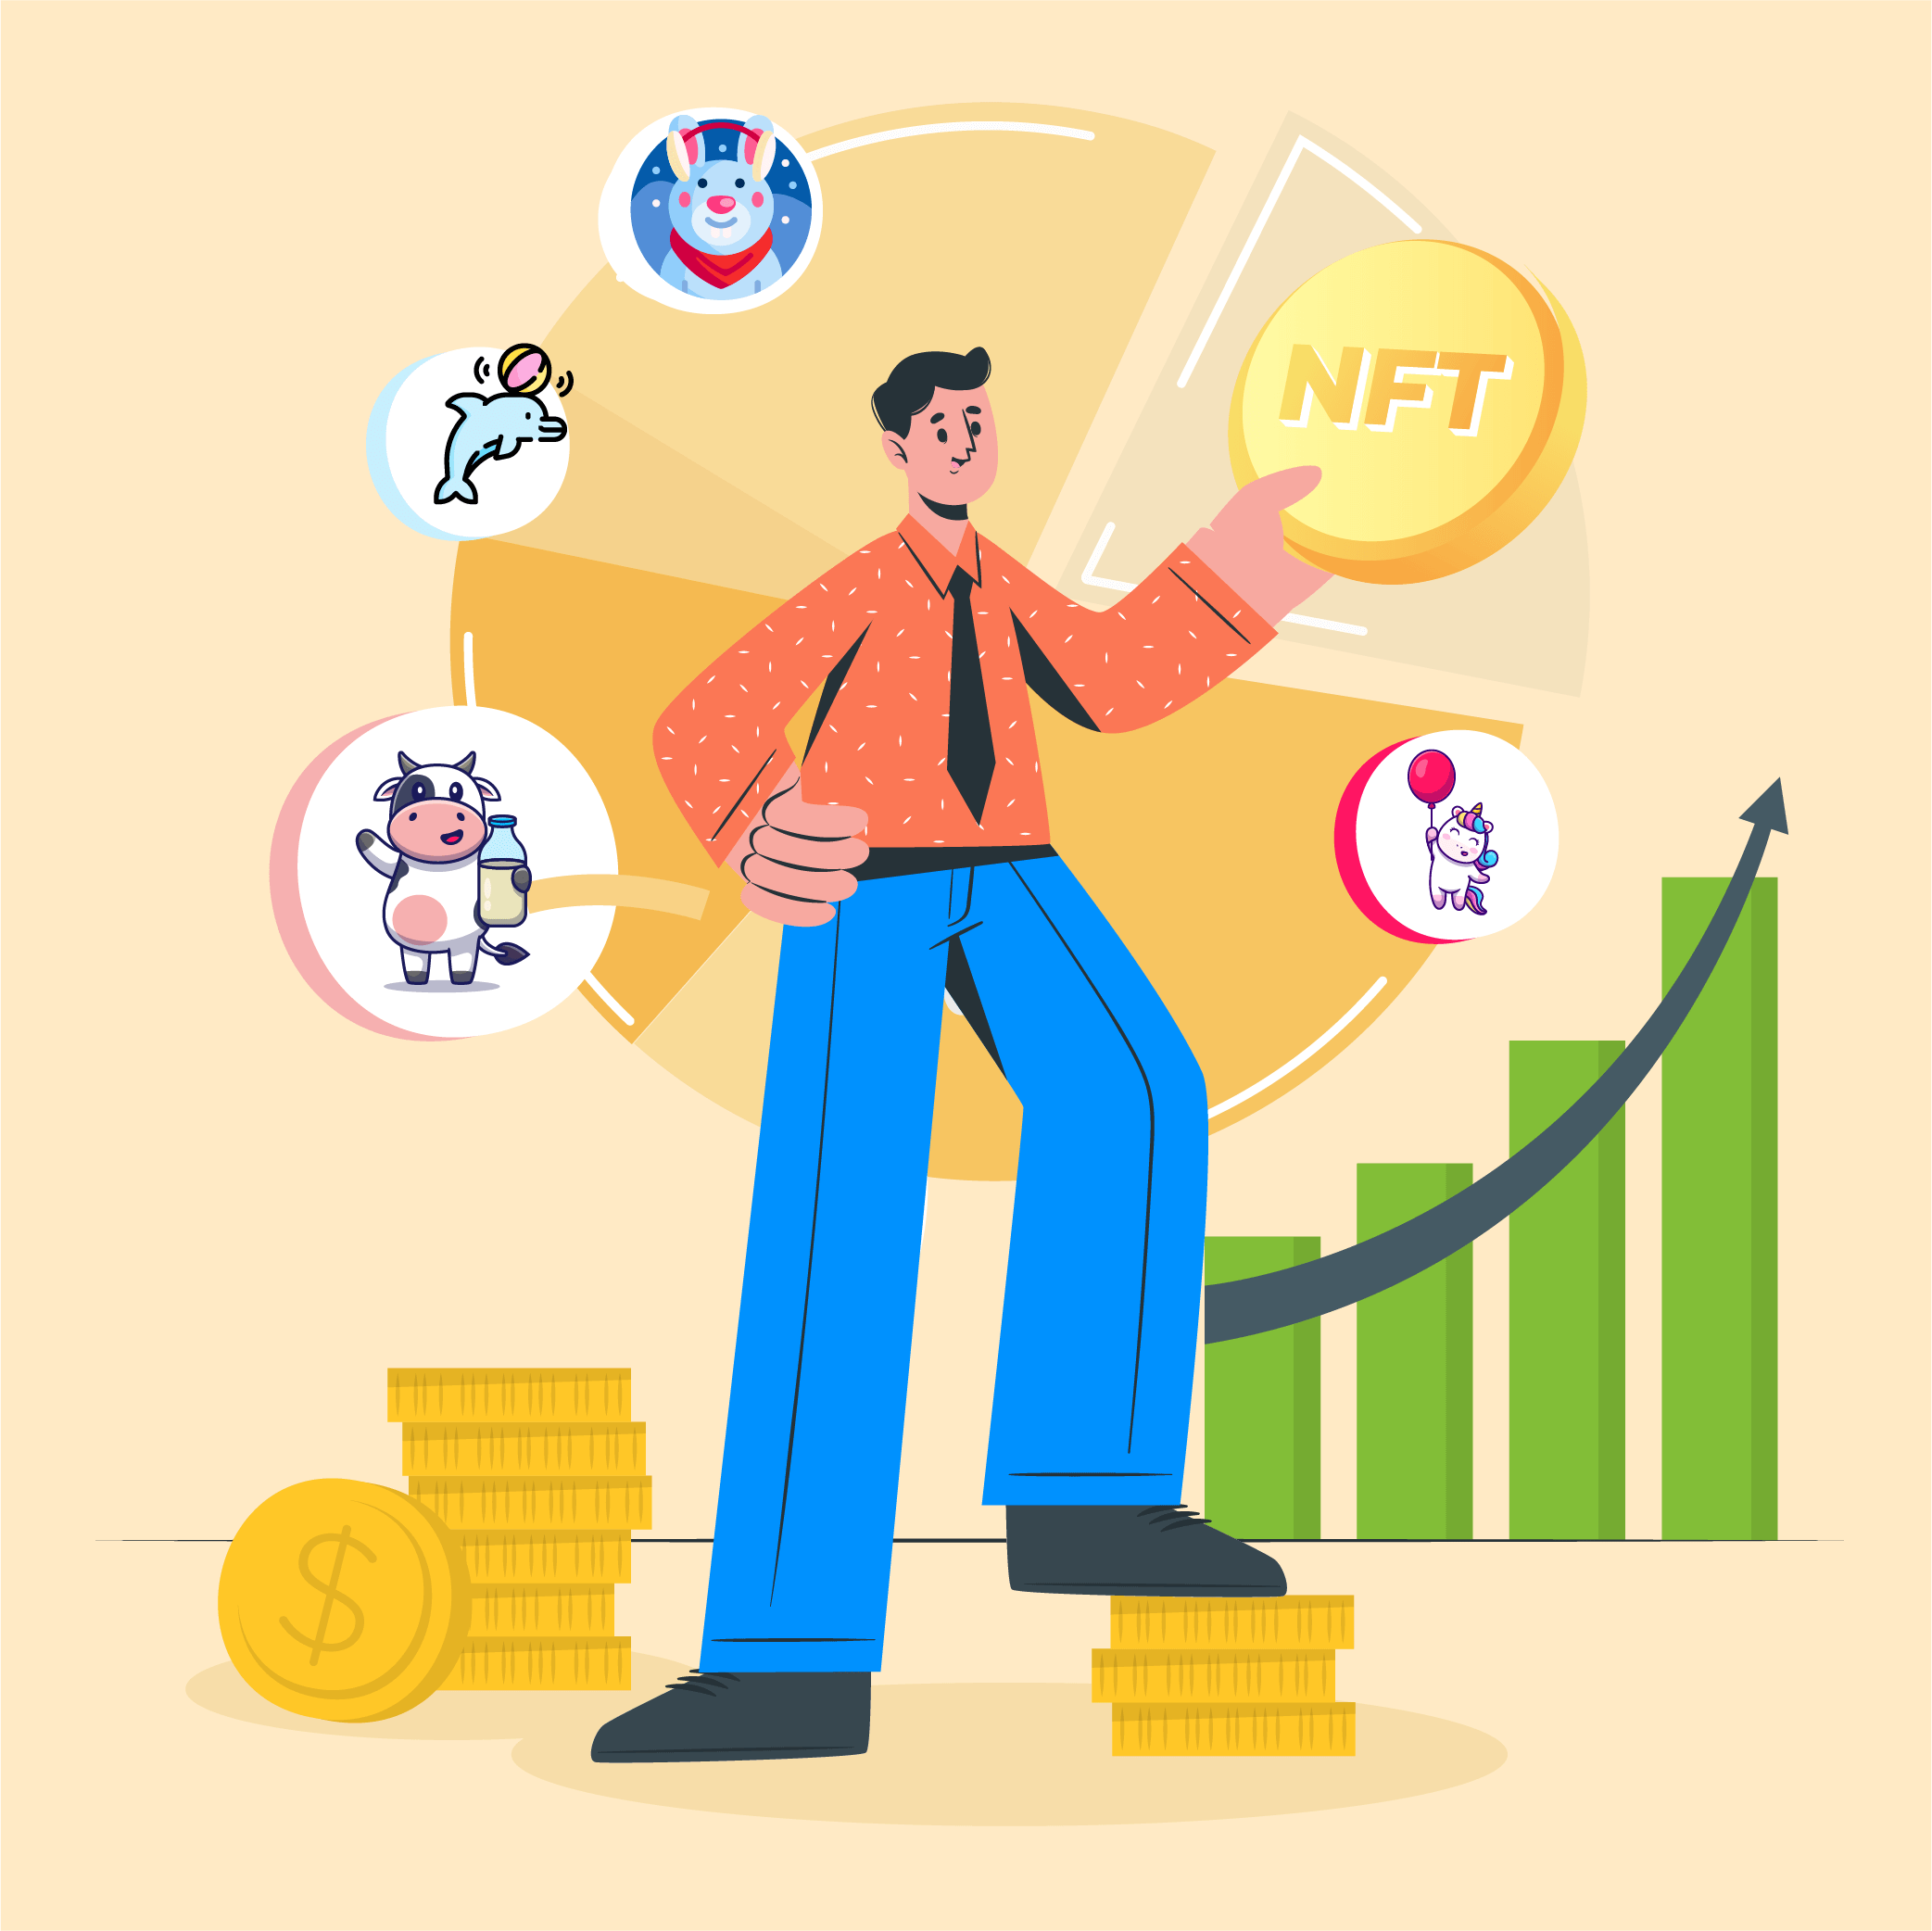 NFT marketplace development services